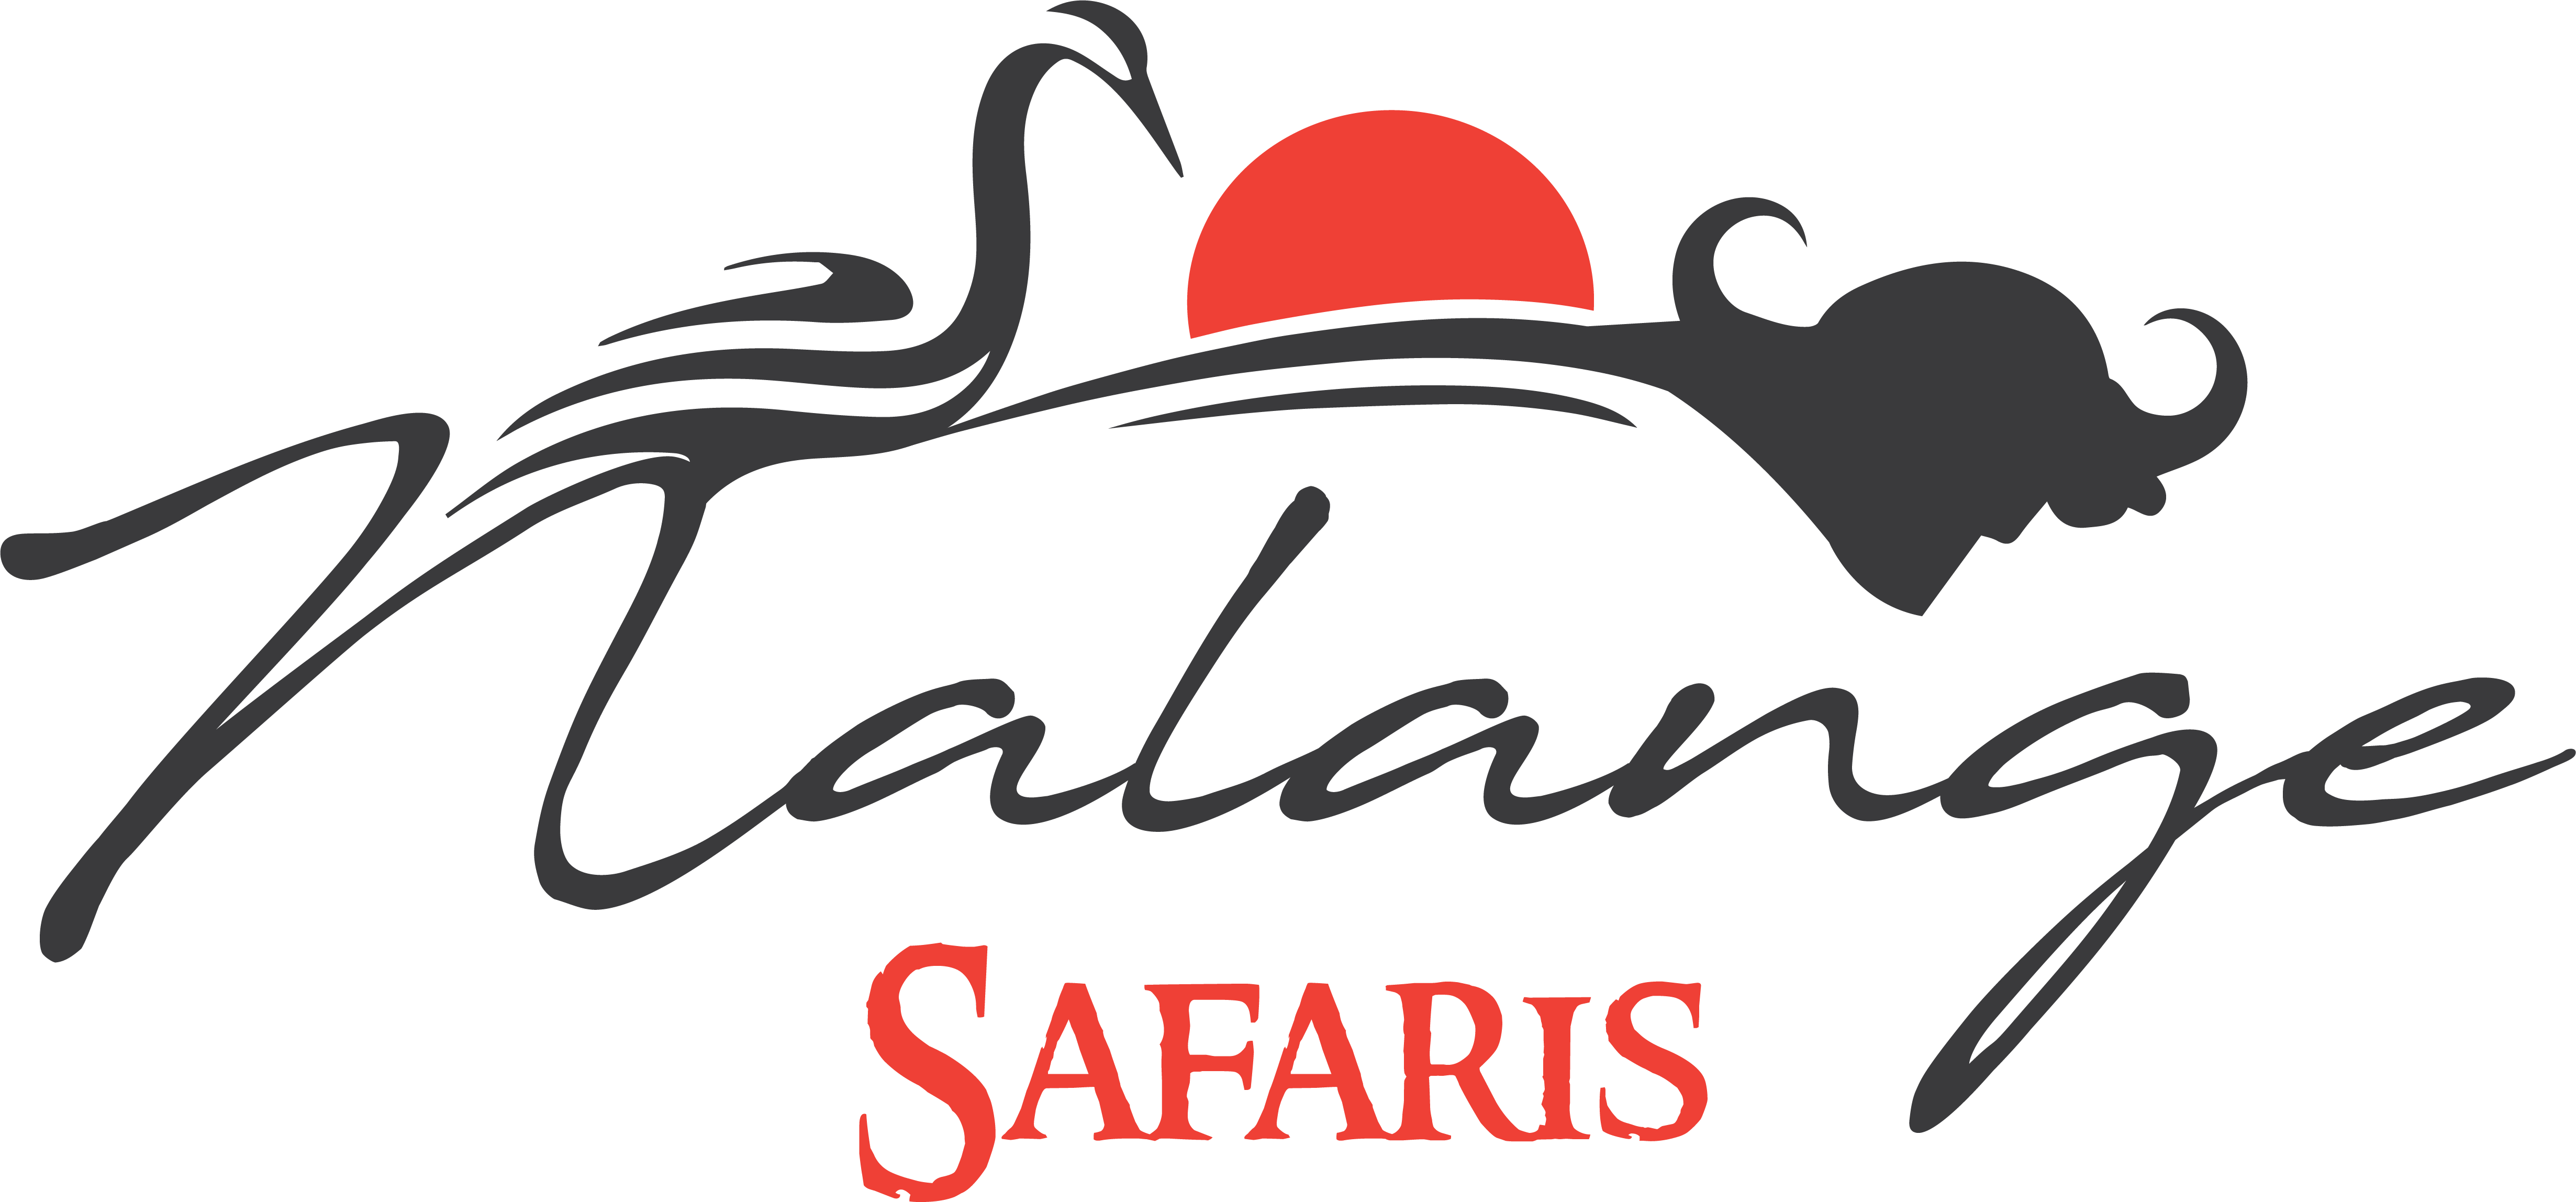 nalange safaris logo